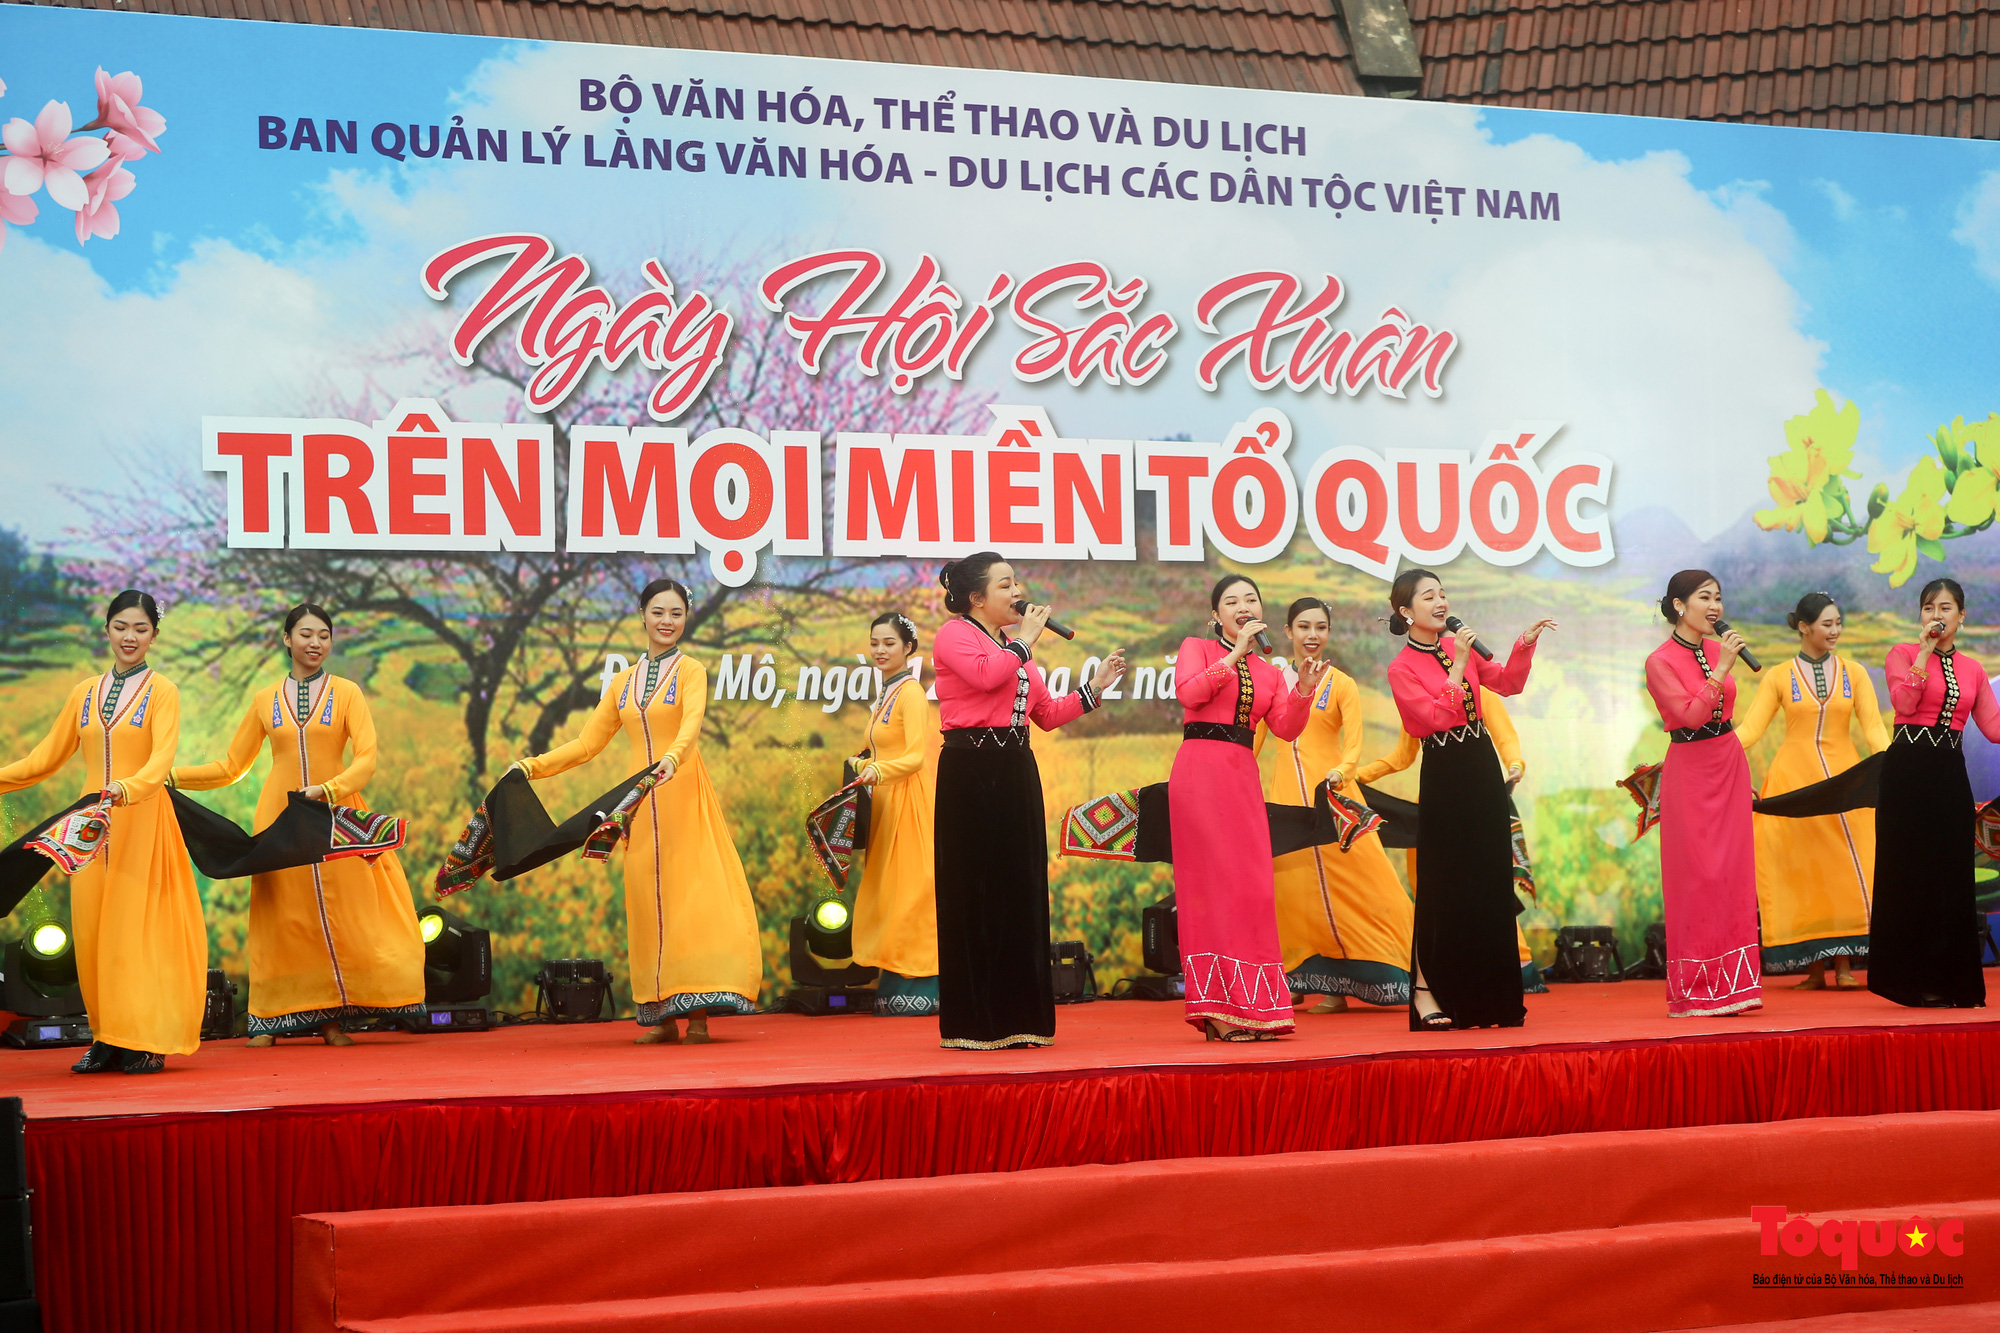 Tháng 2 hội tụ &quot;Sắc Xuân trên mọi miền Tổ quốc&quot; ở Làng Văn hóa, Du lịch các dân tộc Việt Nam - Ảnh 1.